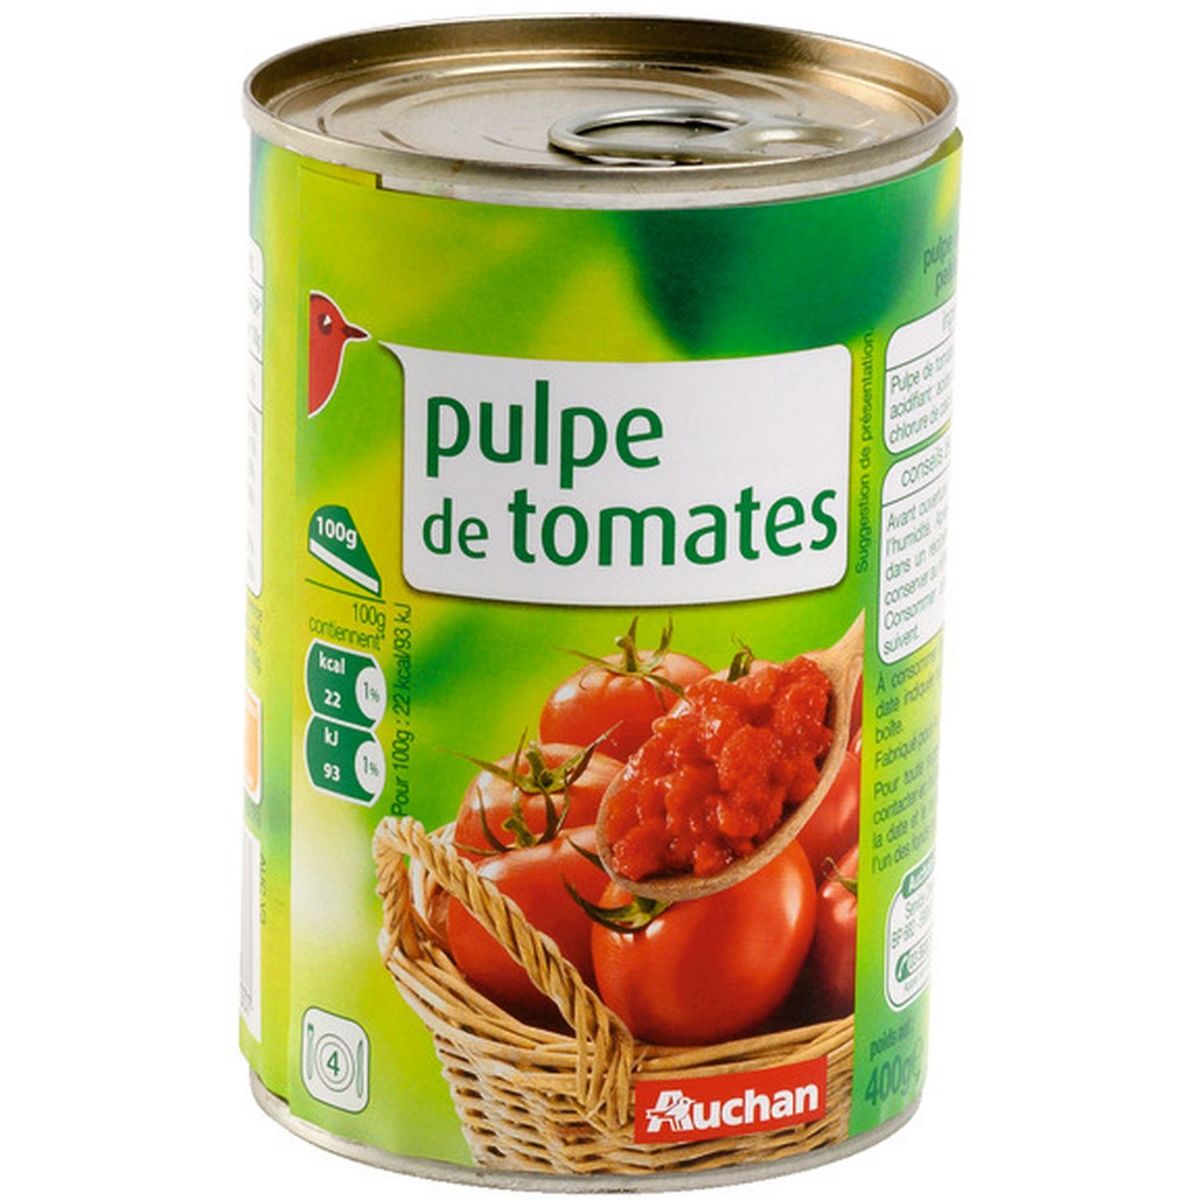 AUCHAN Pulpe de tomates 400g